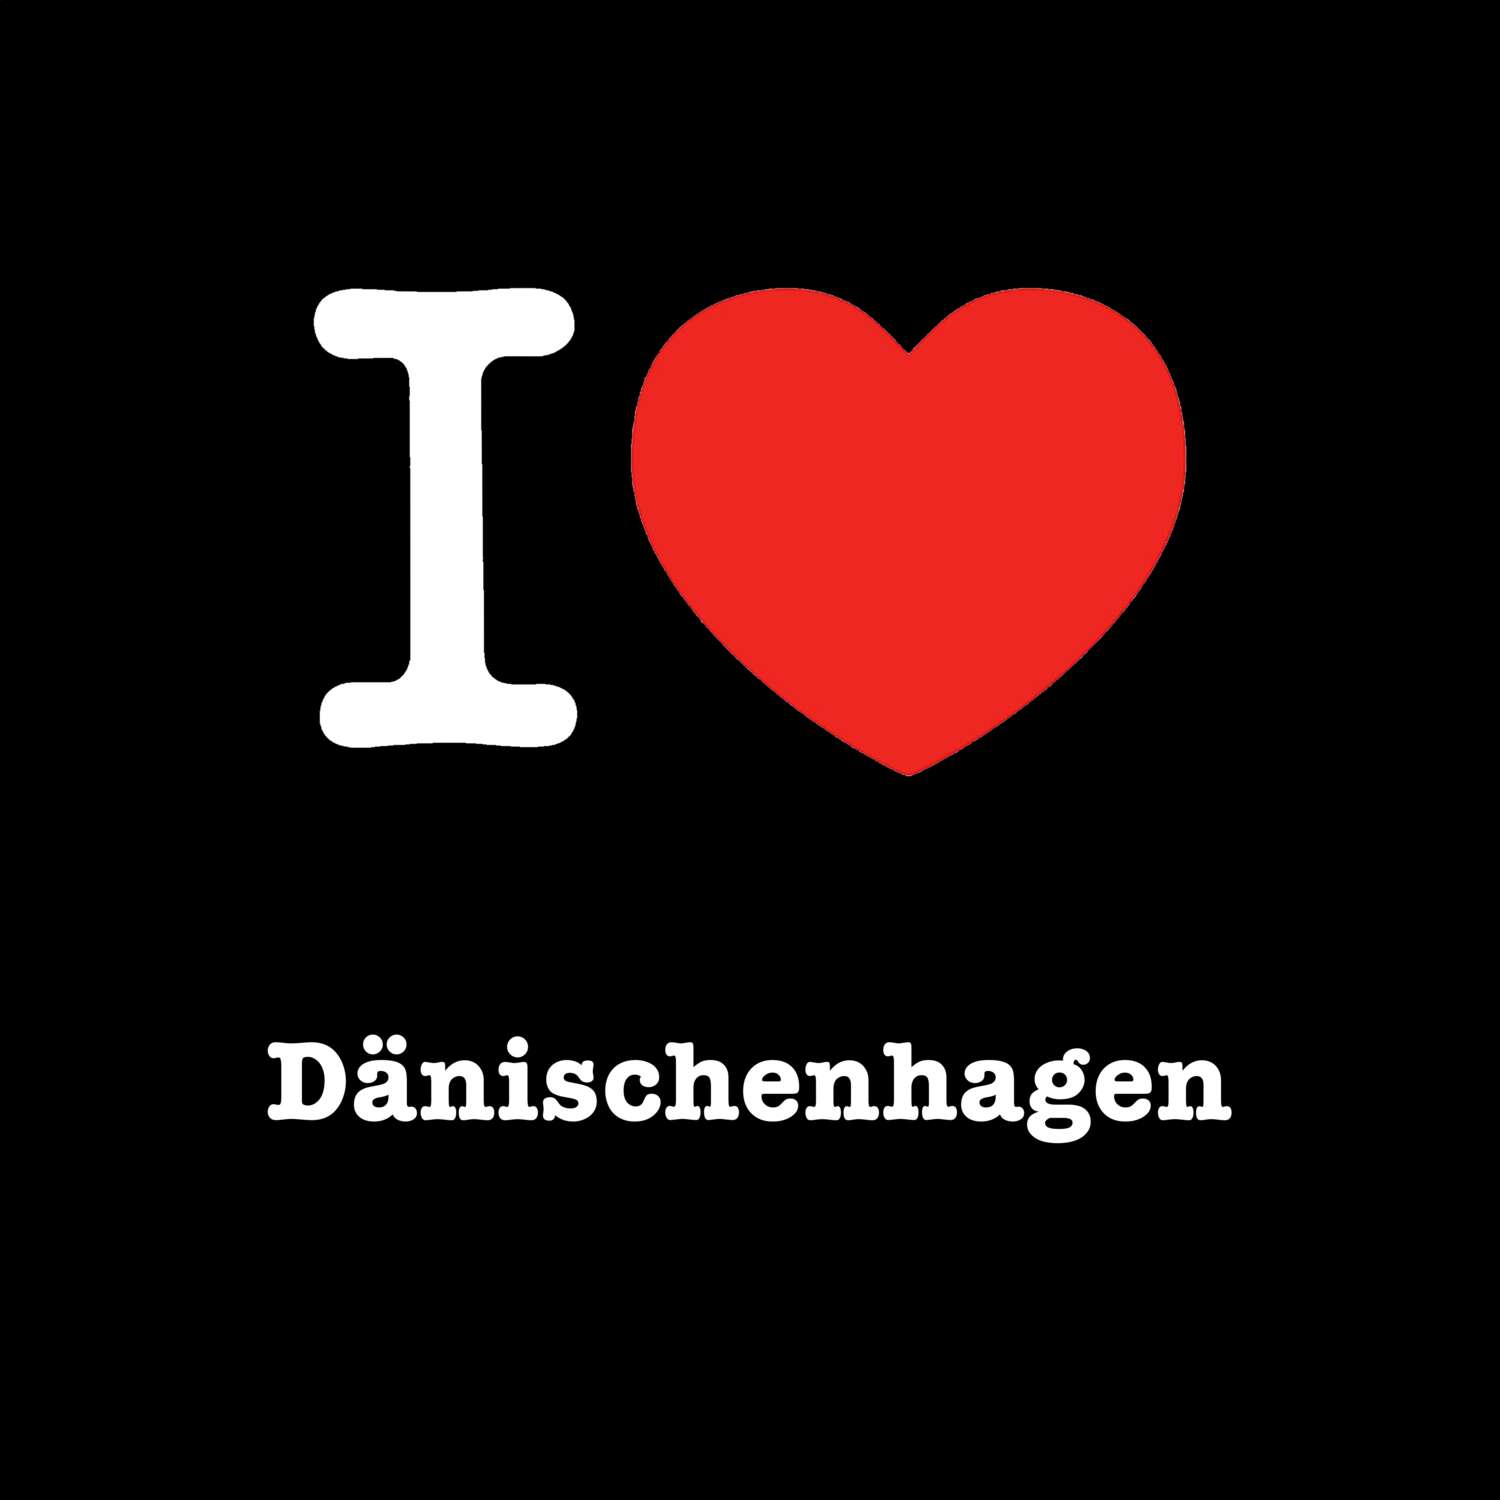 Dänischenhagen T-Shirt »I love«